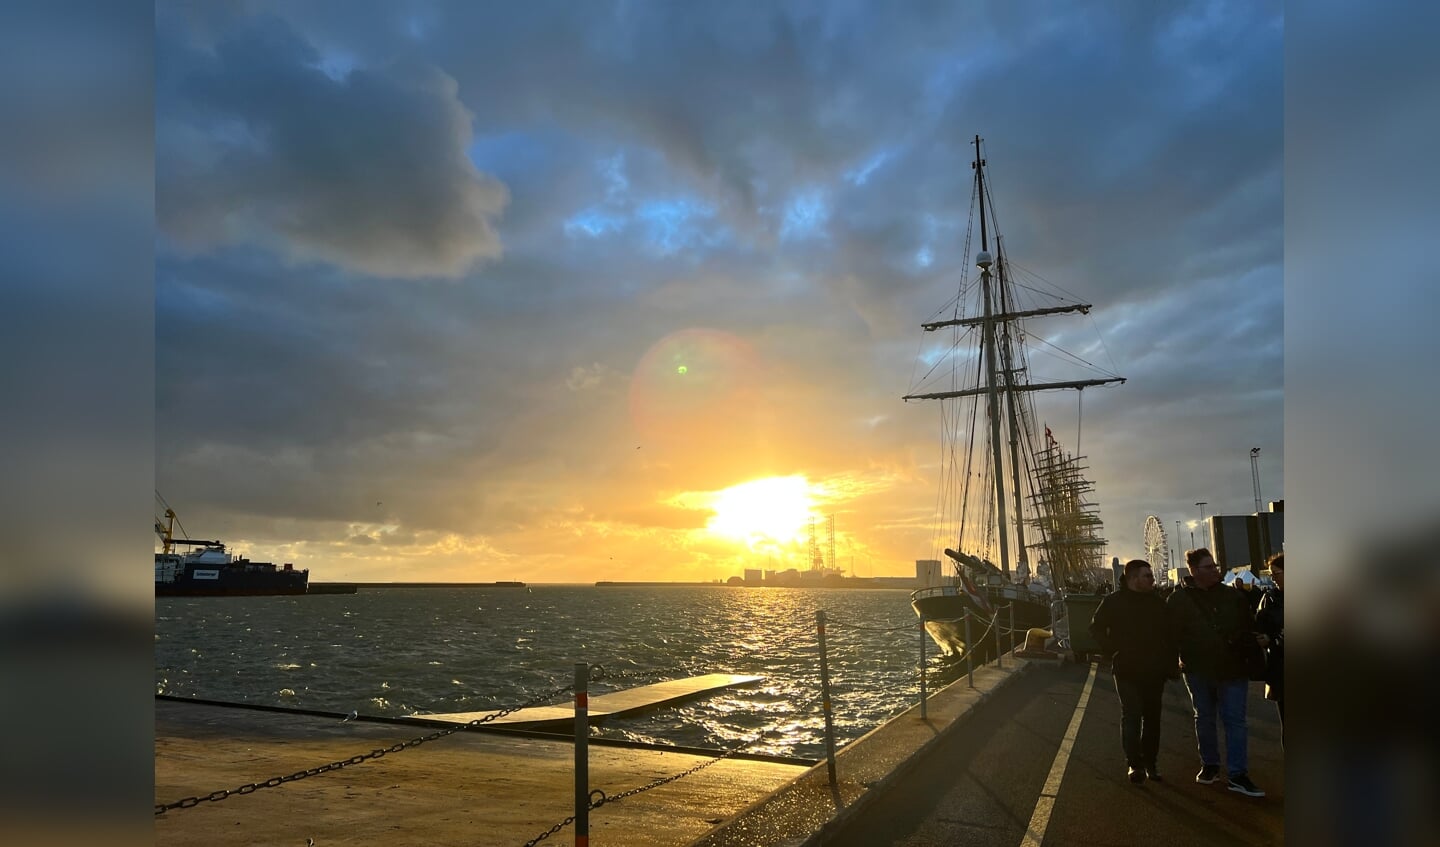 'De zon gaat onder in Esbjerg (Denemarken) en de Tallships liggen geduldig te wachten tot de zon weer op gaat de volgende morgen en ze weer weg mogen varen.'